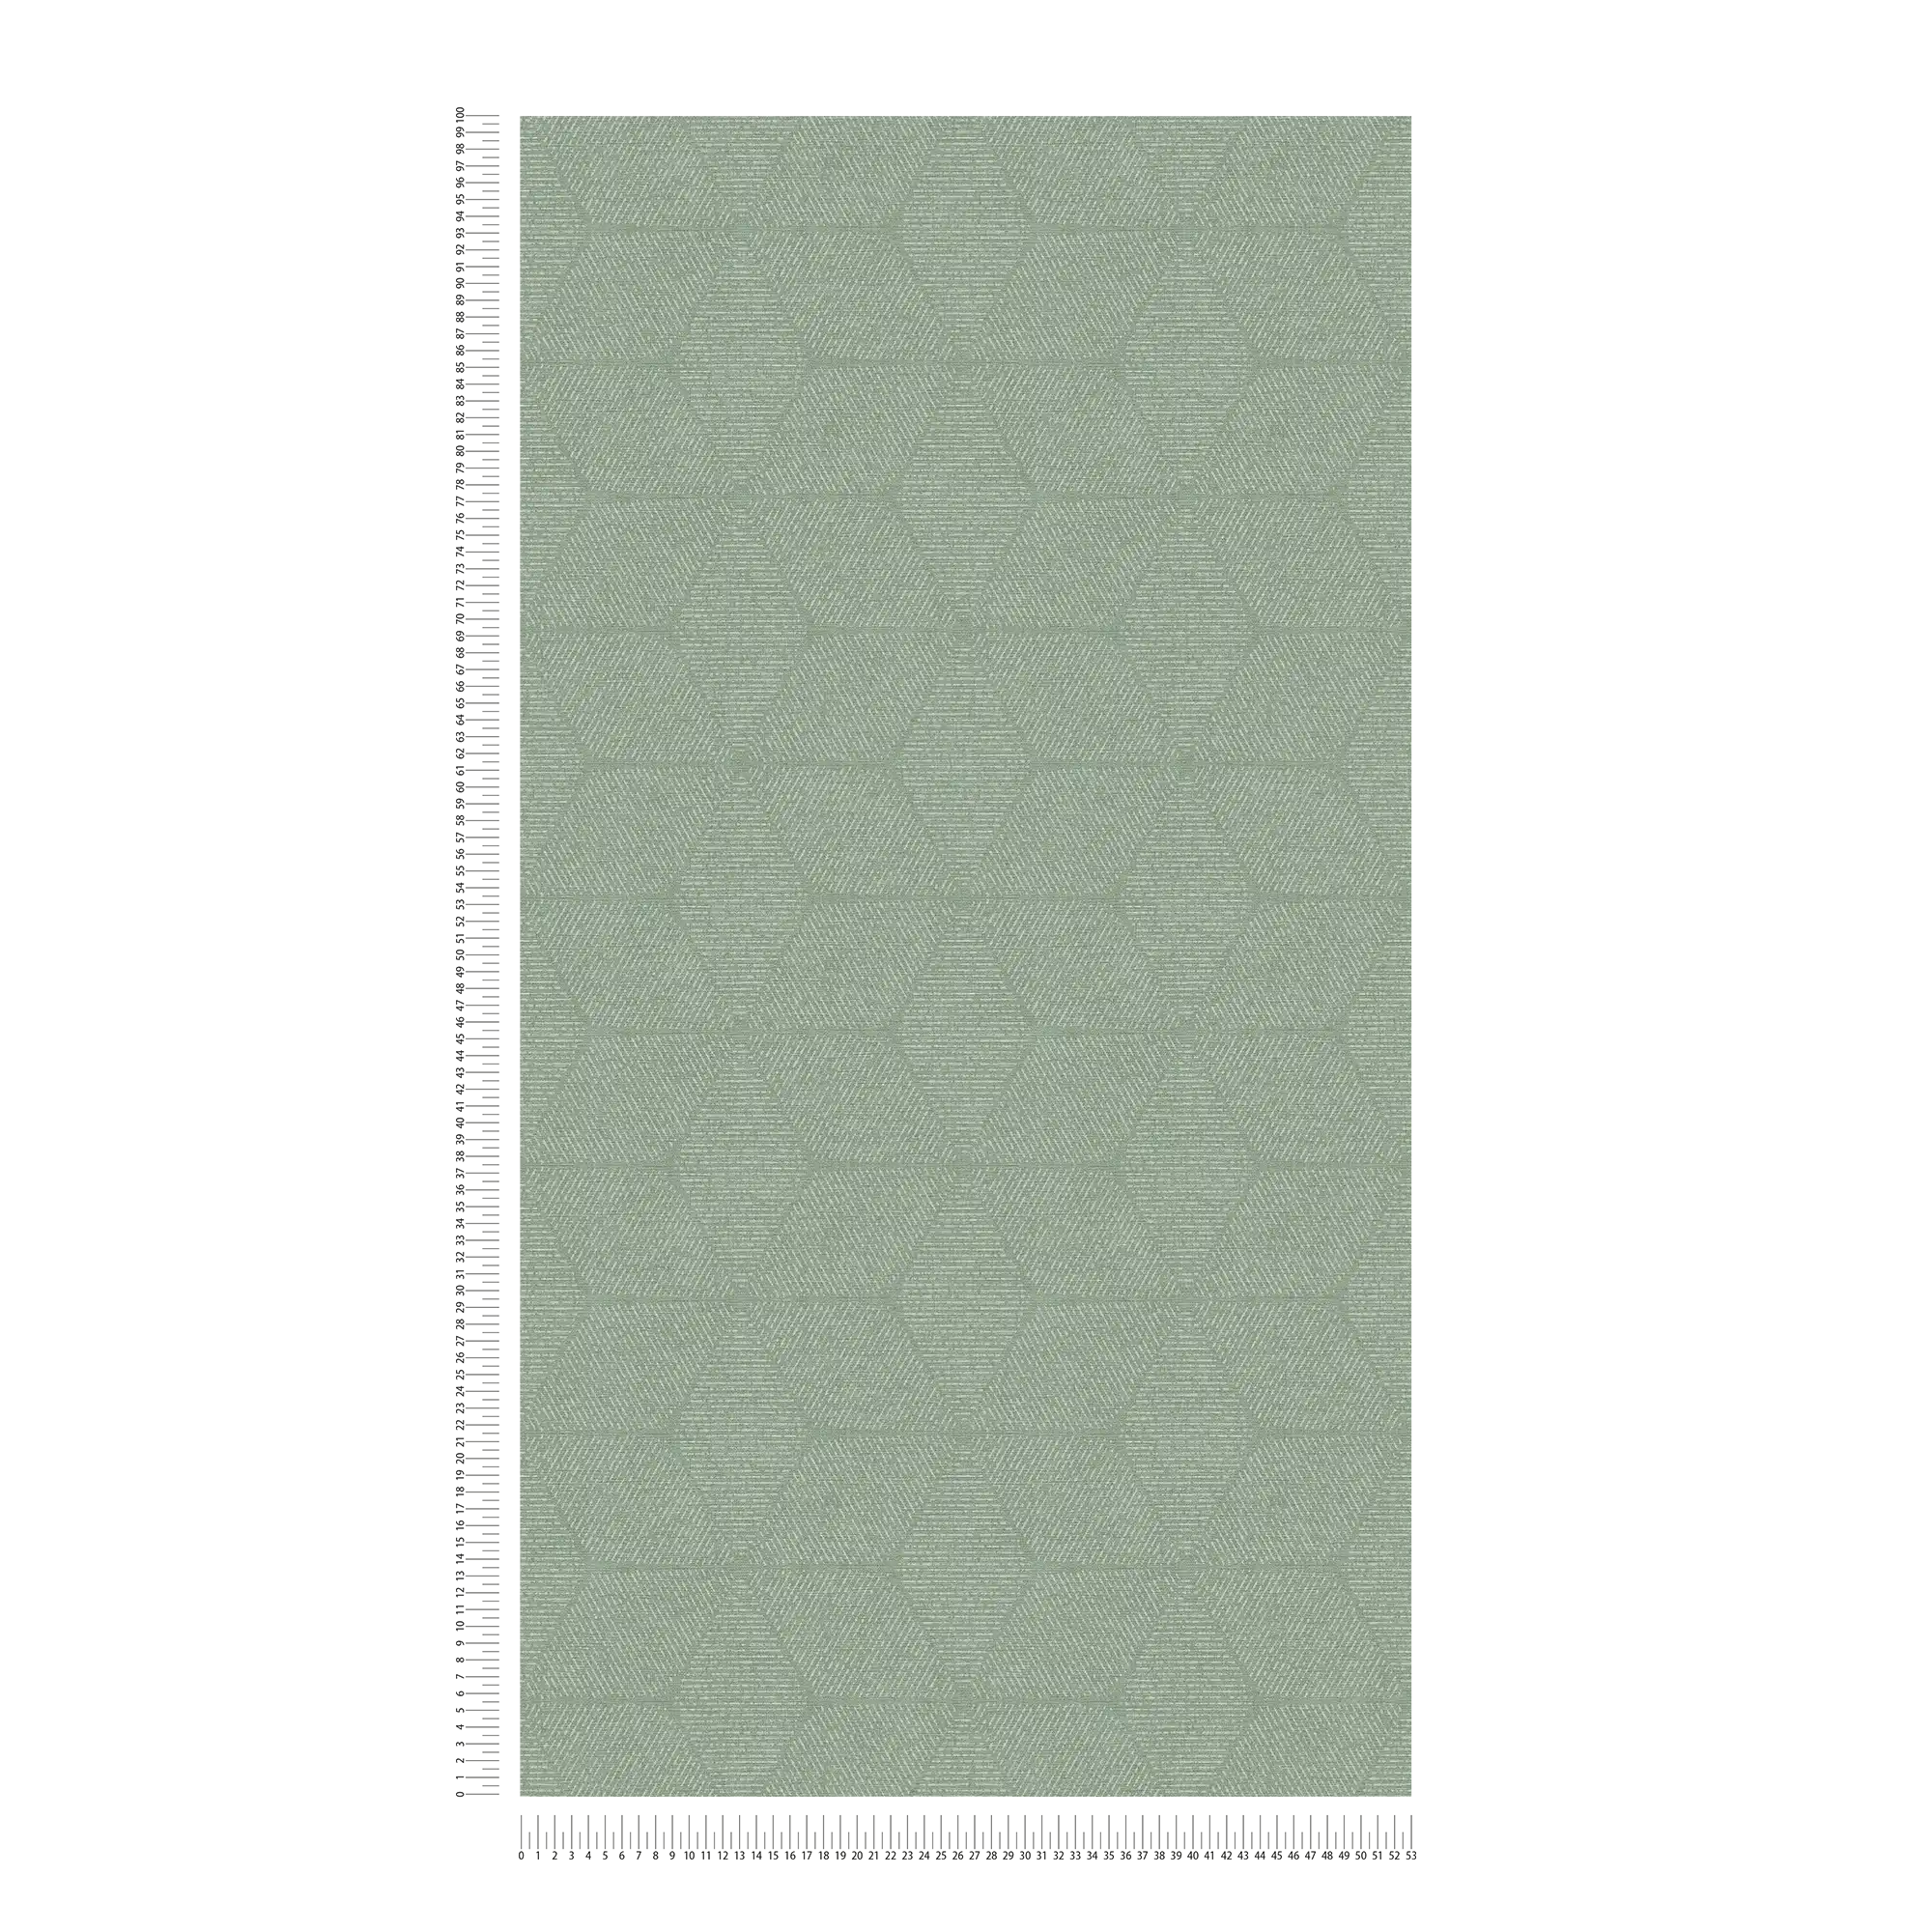             Vliestapete im floralen Muster – Grün, Weiß
        